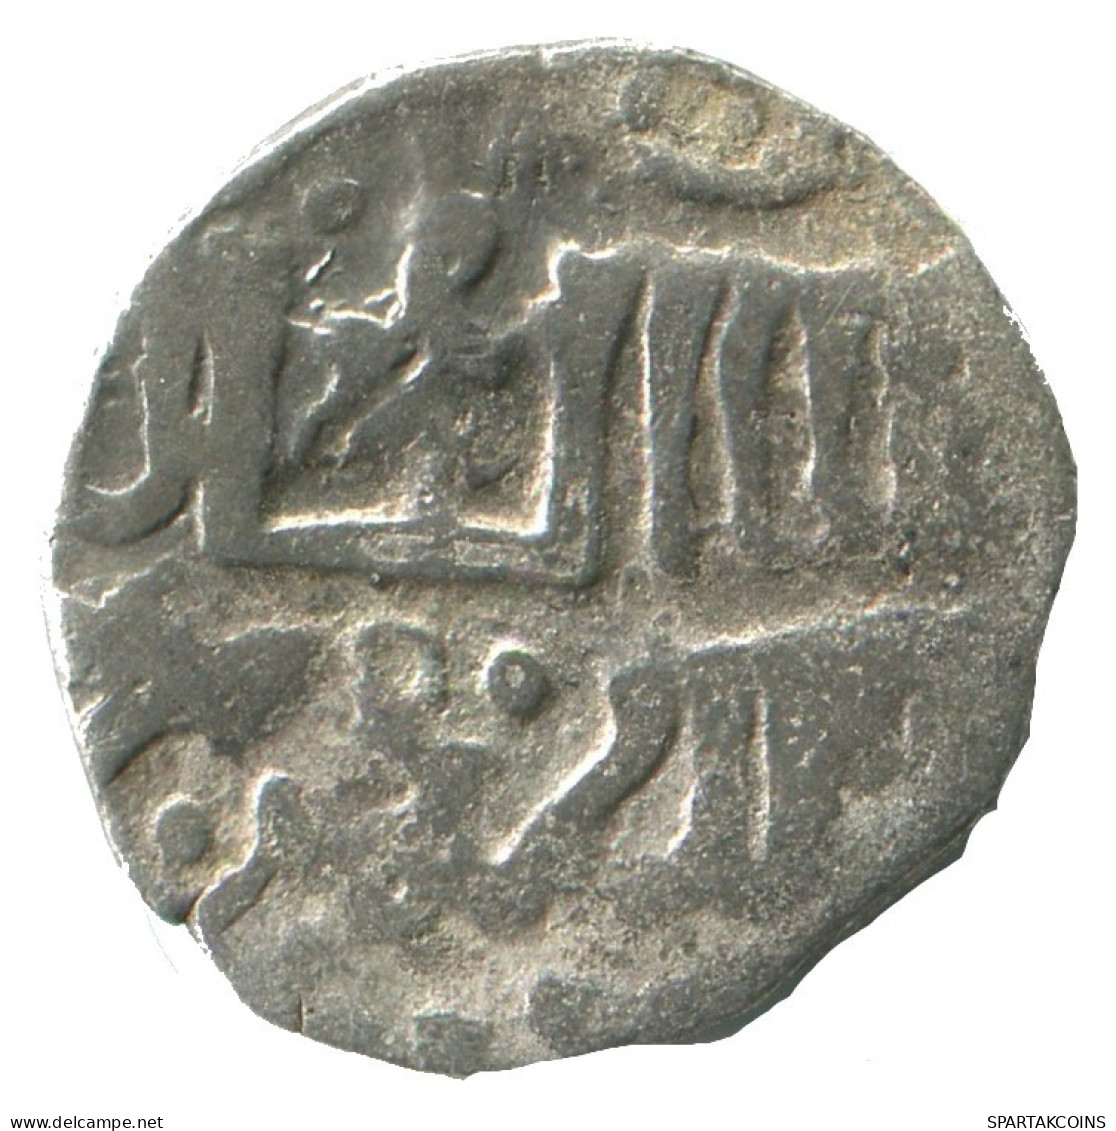 GOLDEN HORDE Silver Dirham Medieval Islamic Coin 1.5g/16mm #NNN2019.8.E.A - Islamische Münzen